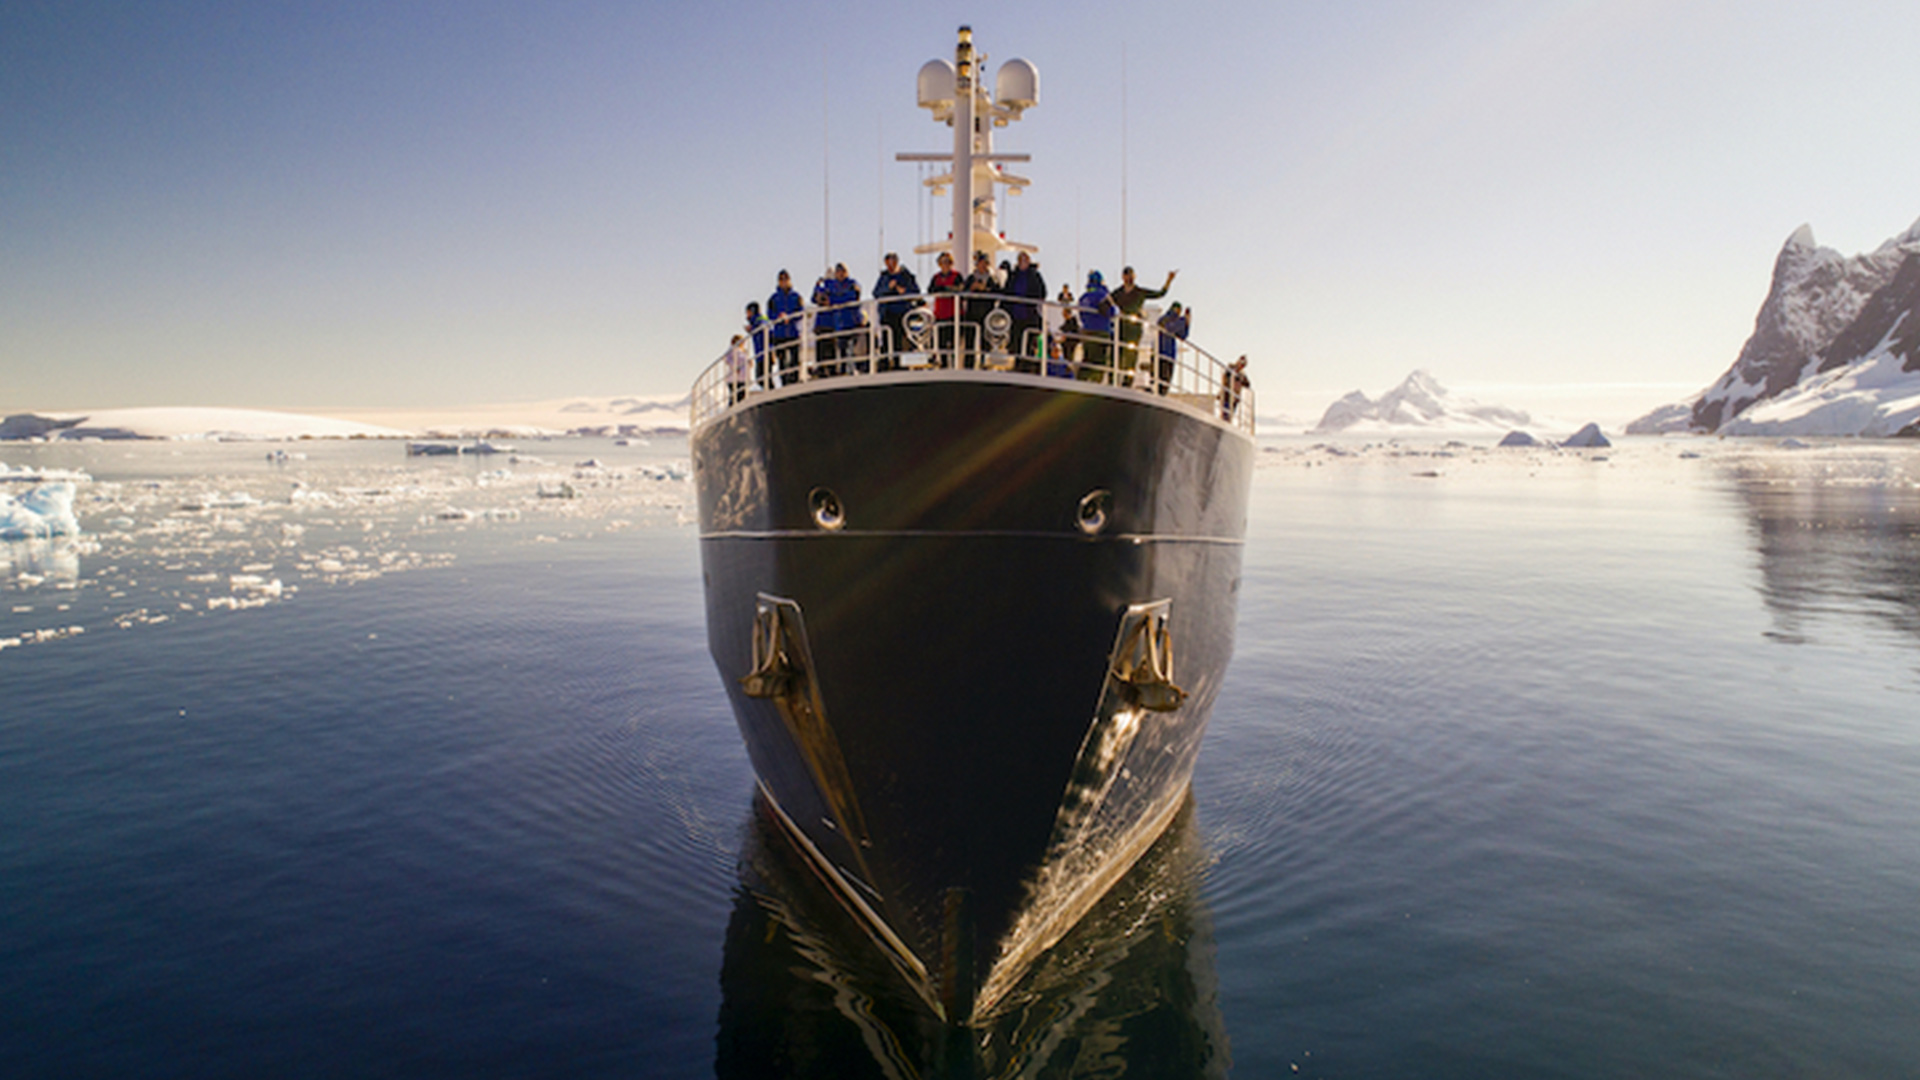 EYOS Expeditions Celebrates the Antarctic Bicentennial